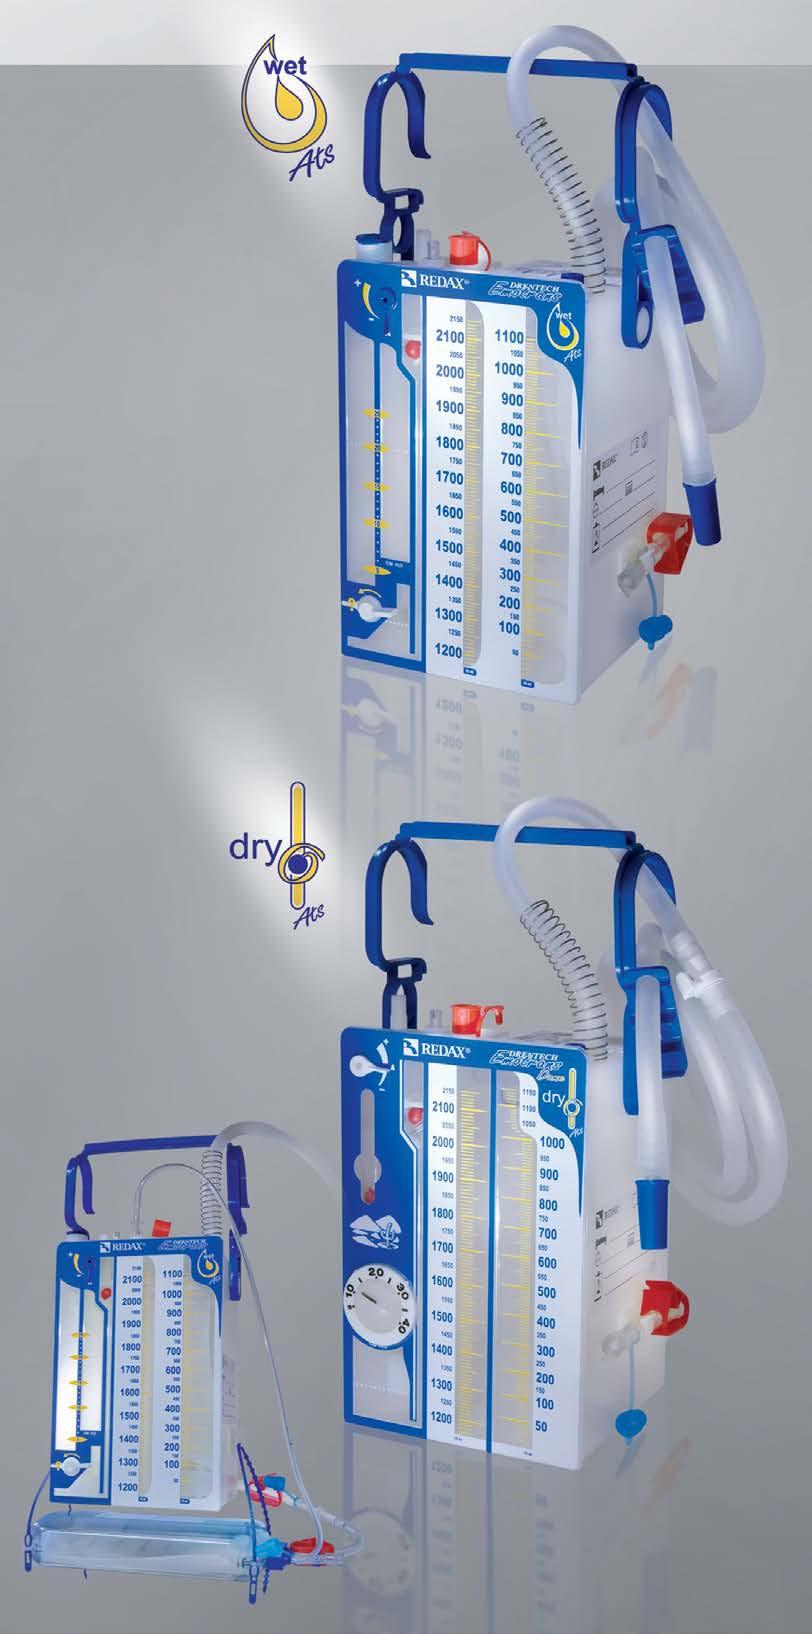 DRENTECH EMOTRANS Unikt system med inbyggd dubbelfiltrering: ett 200 mikron-filter inuti uppsamlingskammaren och en sekund 40 mikron mikroaggregat integrerade i blodpåsen.